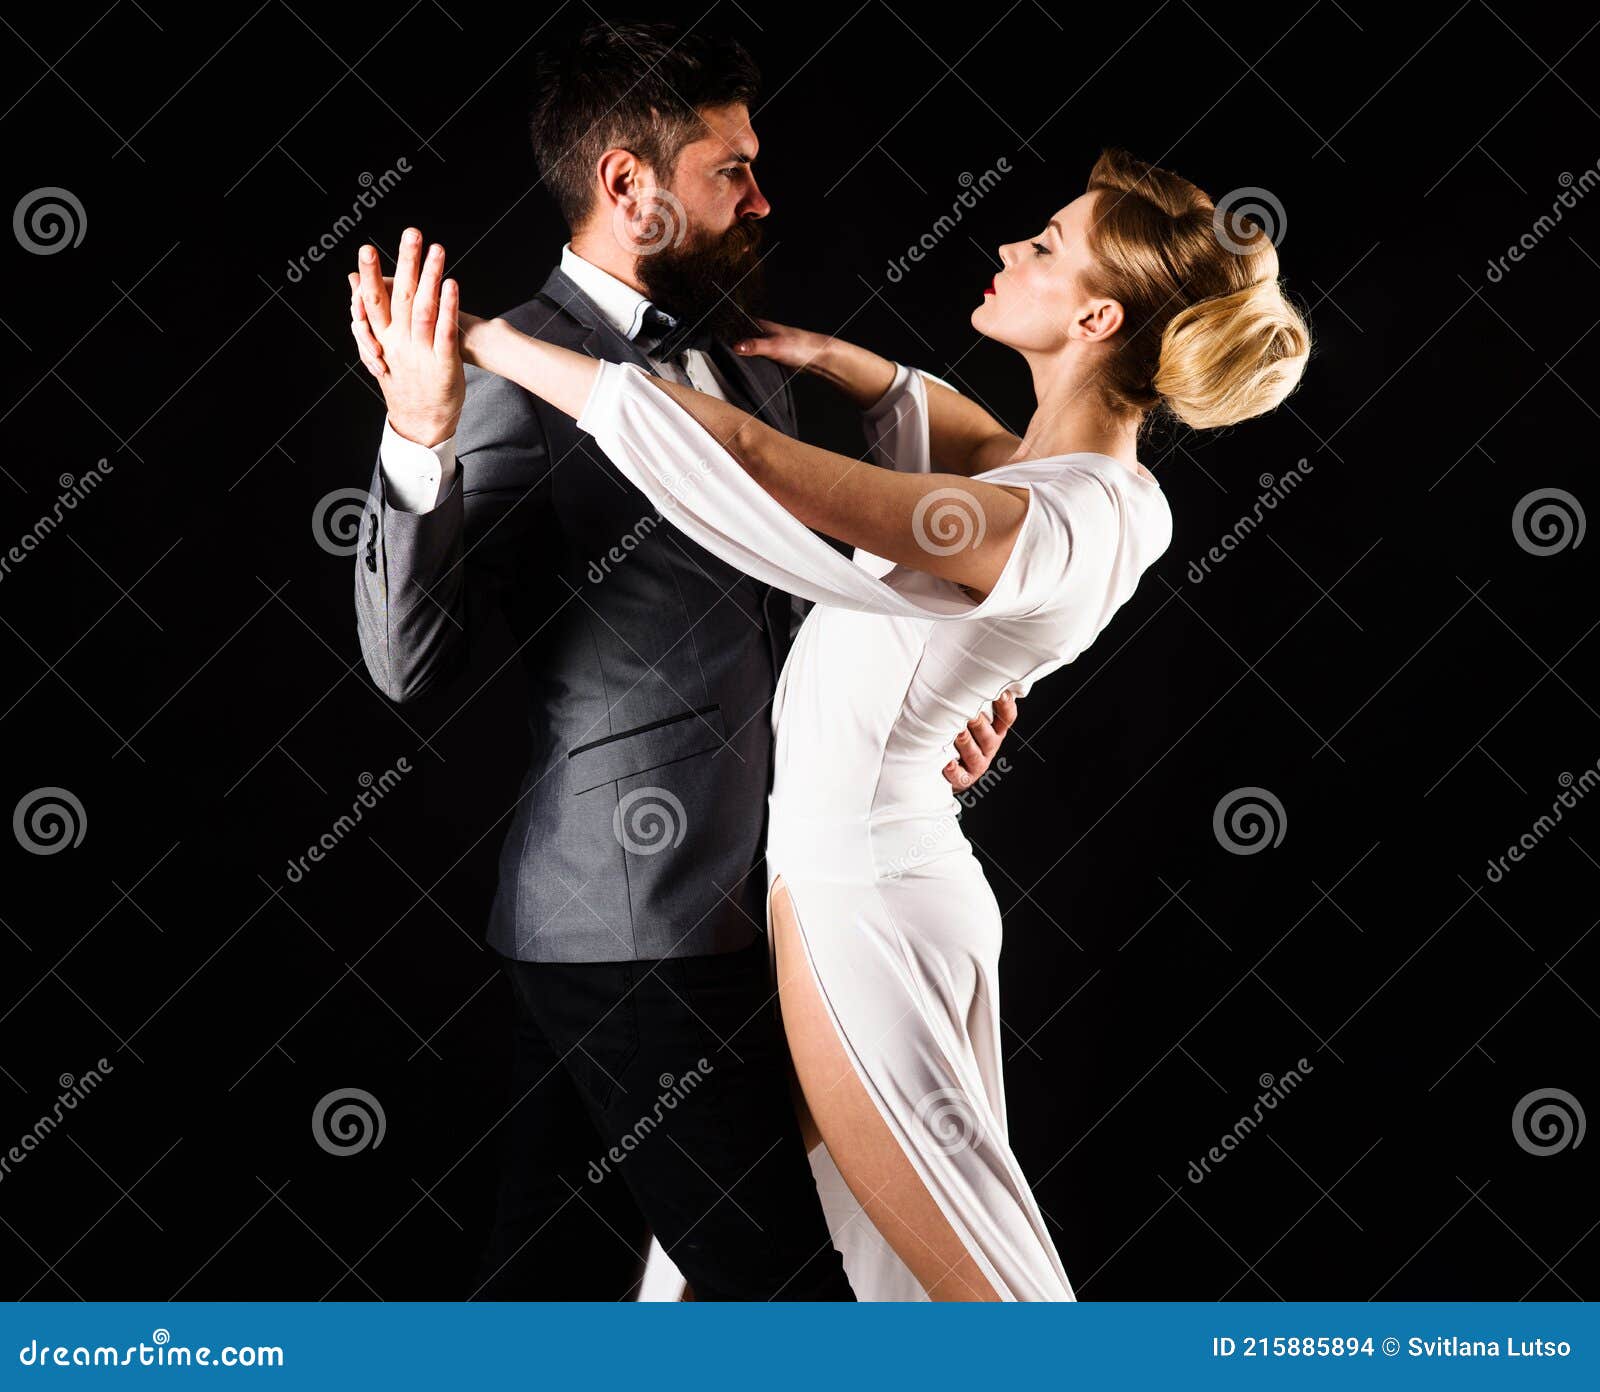 舞蹈舞厅情侣在红色礼服舞蹈姿势孤立的黑色背景。性感的专业舞者跳舞 walz, 探戈, slowfox 和快步。黑白相间图片免费下载-5029998599-千图网Pro